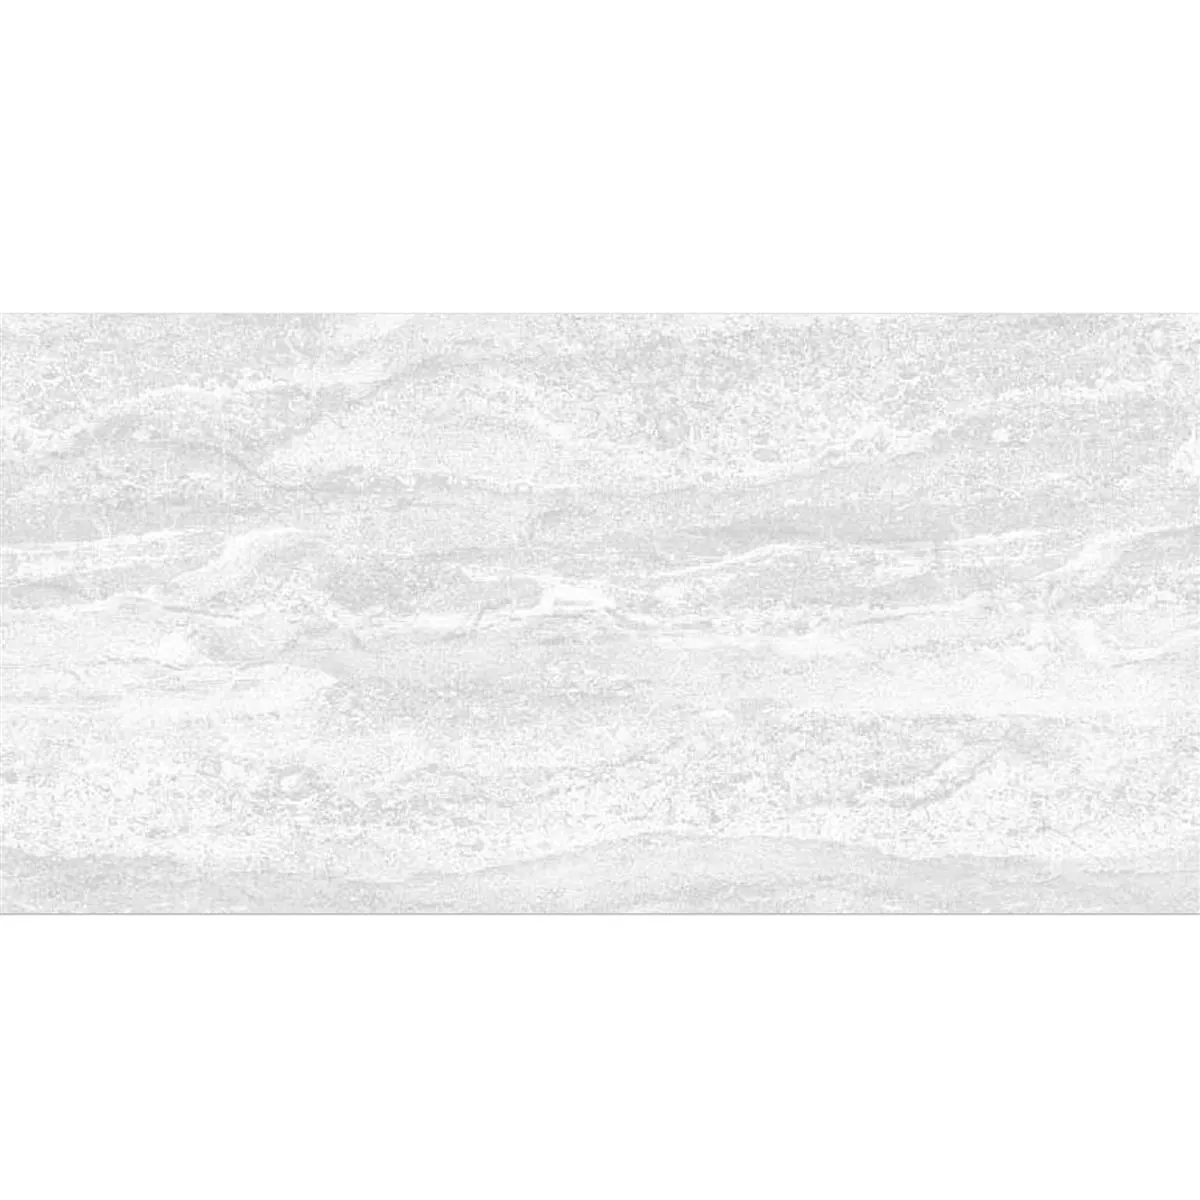 Vzorek Obkladačka Bellinzona Bílá Strukturovaný 30x60cm